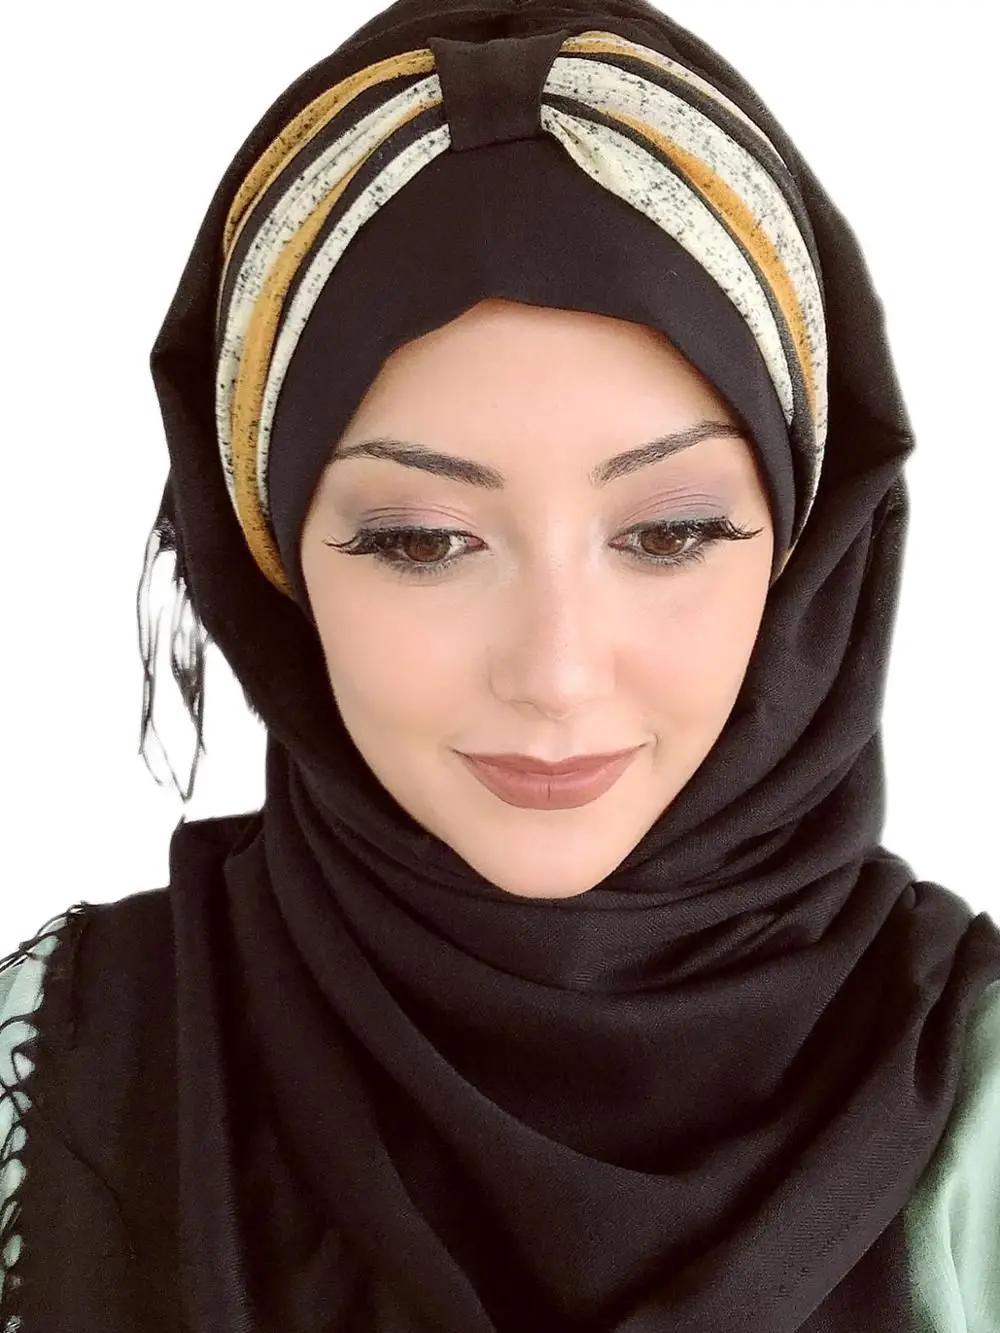 

Yeni Moda Hijab Müslüman Kadın 2021 Başörtüsü İslami Kıyafet Türban Eşarp Şapka Fular Sarı Çizgili Büzgü Detaylı Hazır Siyah Şal